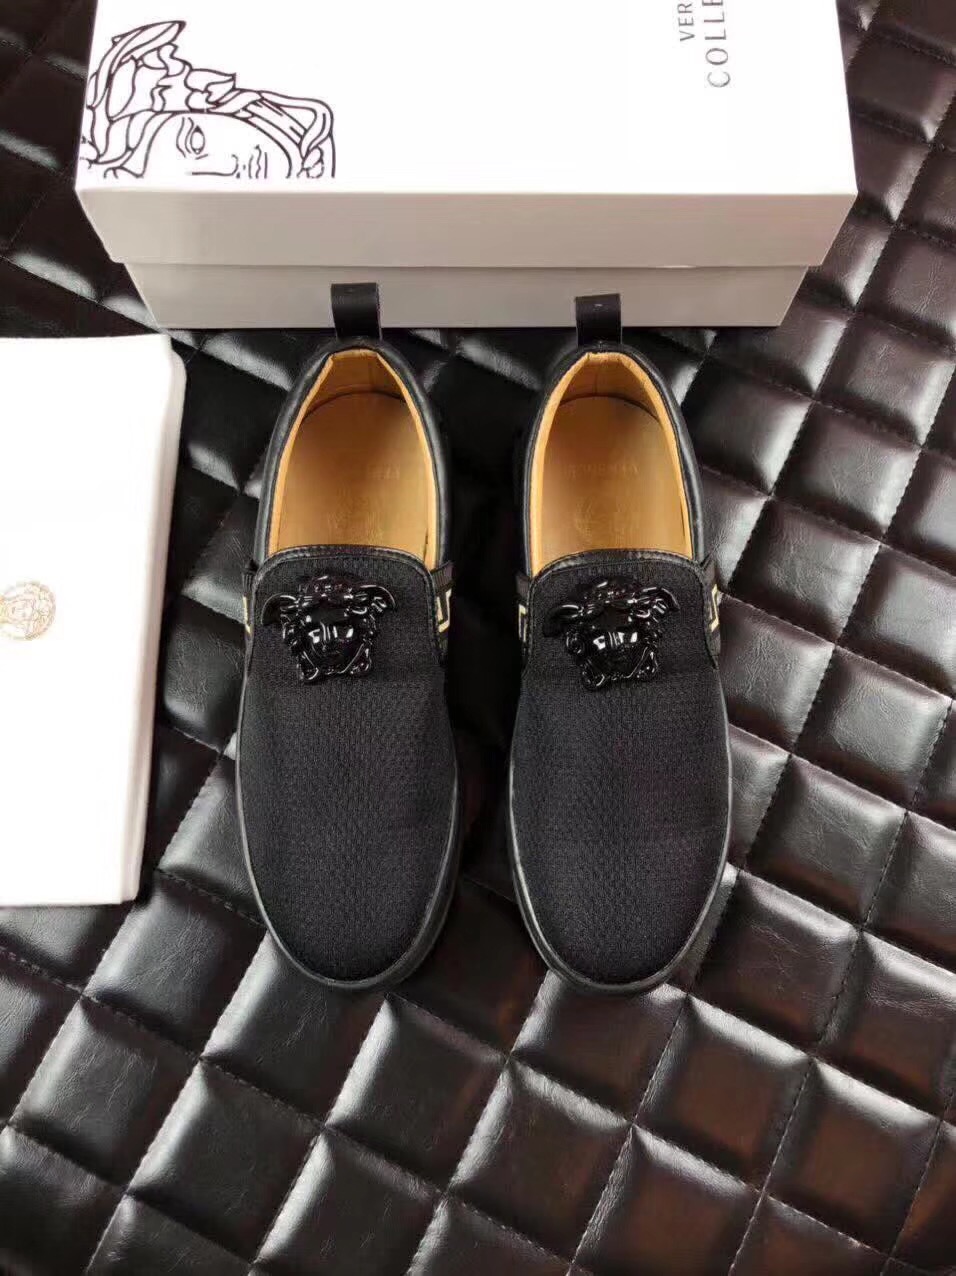  ｛范思哲｝最新款上市 男士透气网休闲鞋 上脚超舒适